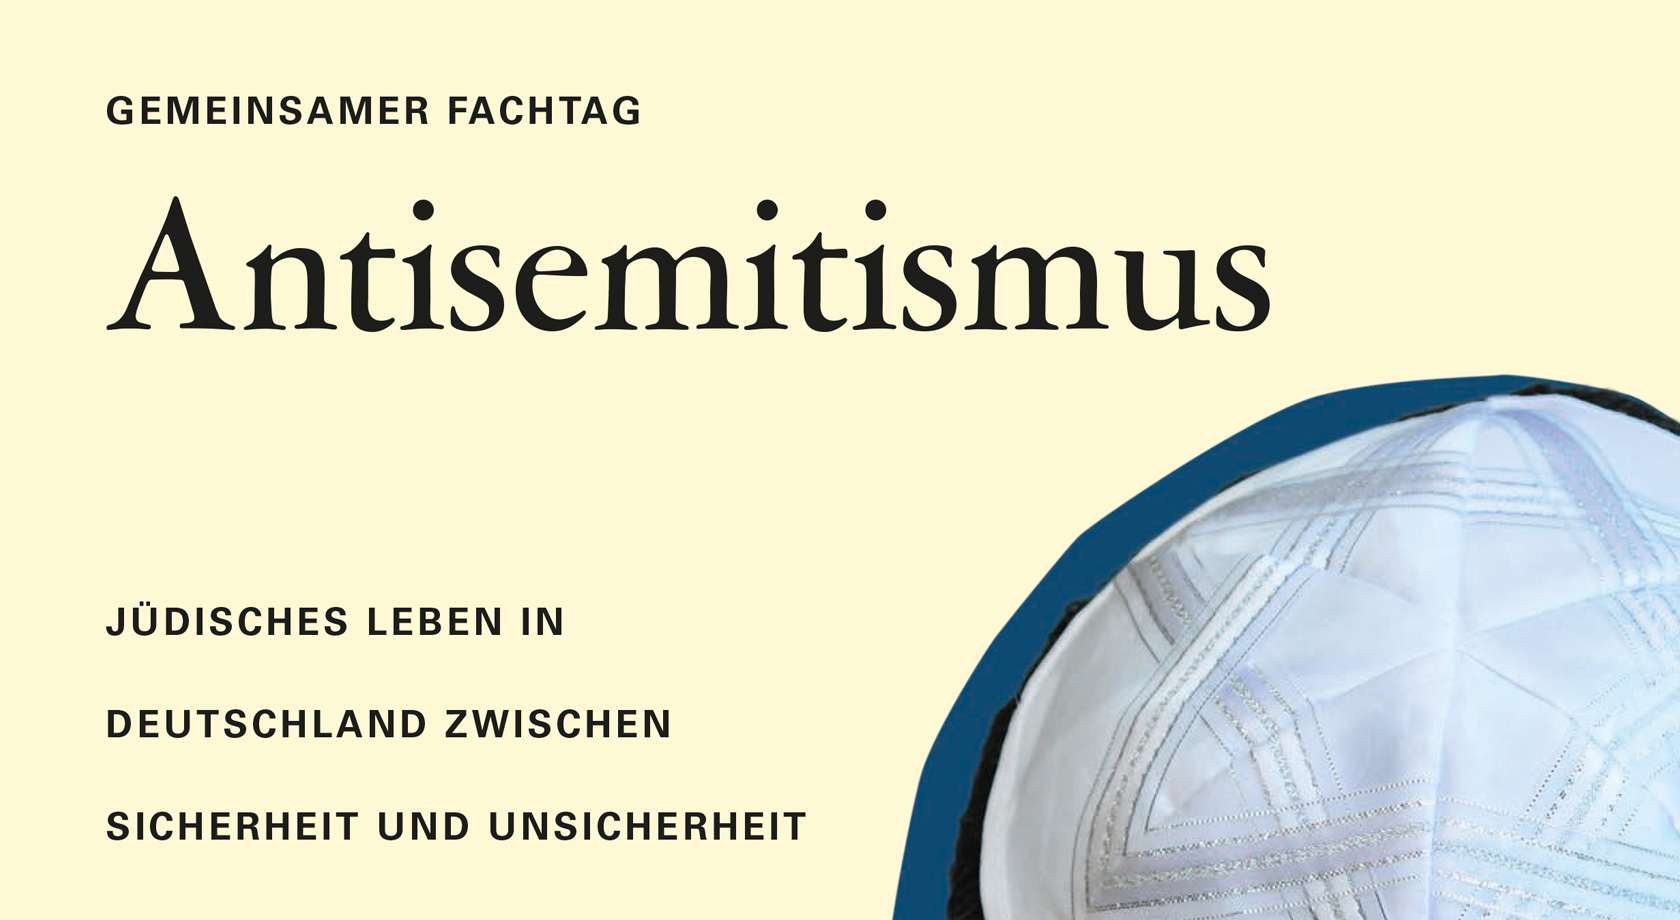 Titelbild der Publikation "Gemeinsamer Fachtag Antisemitismus"